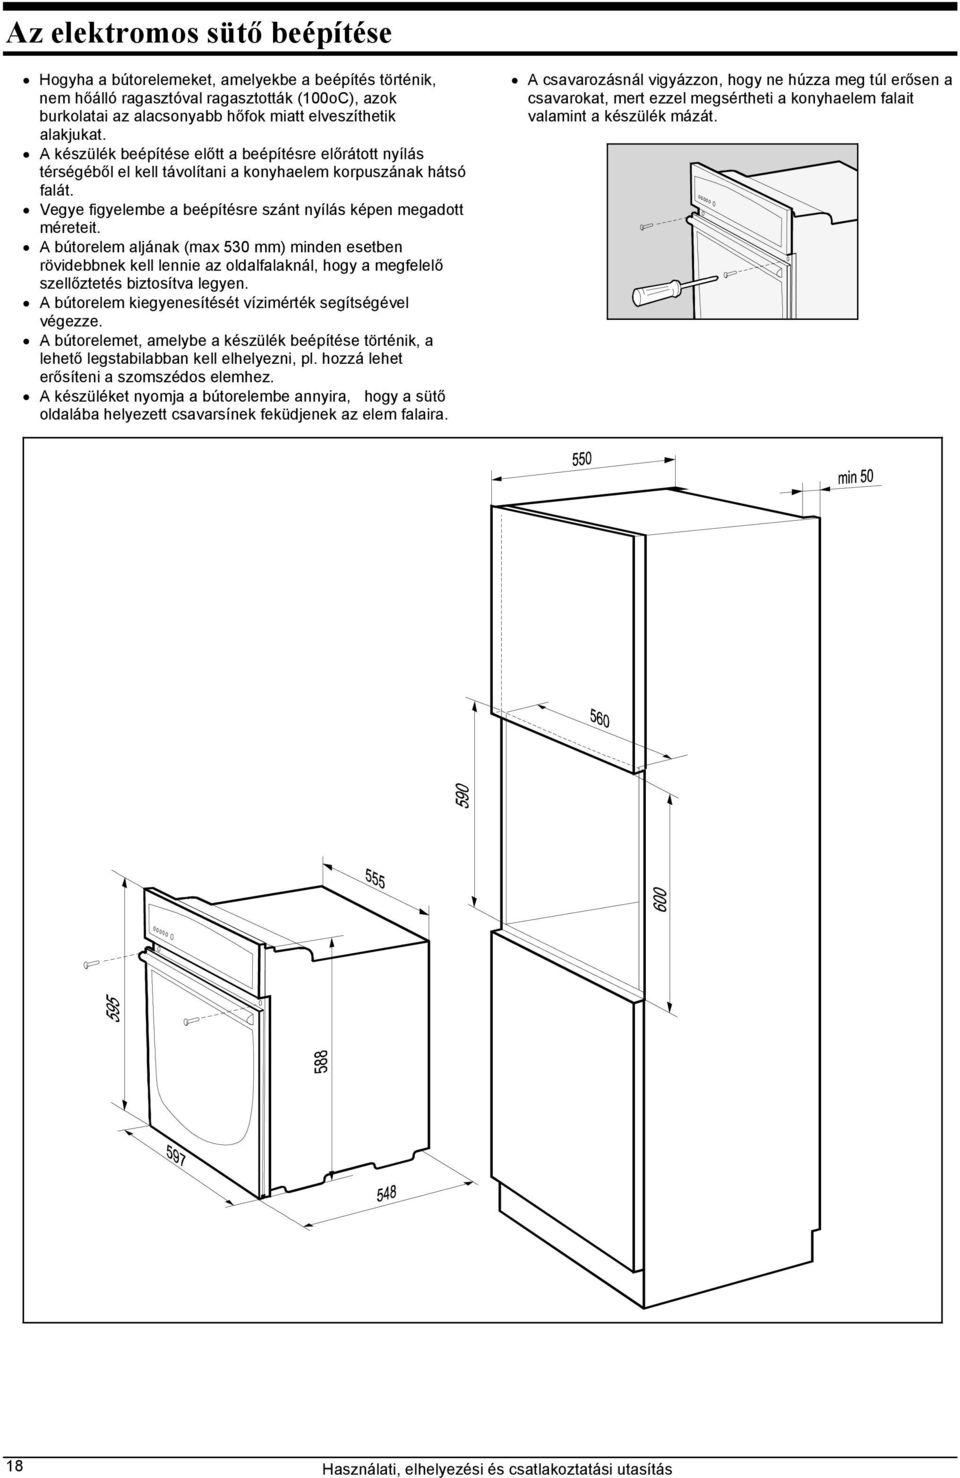 Elektromos sütő beépítése - PDF Ingyenes letöltés